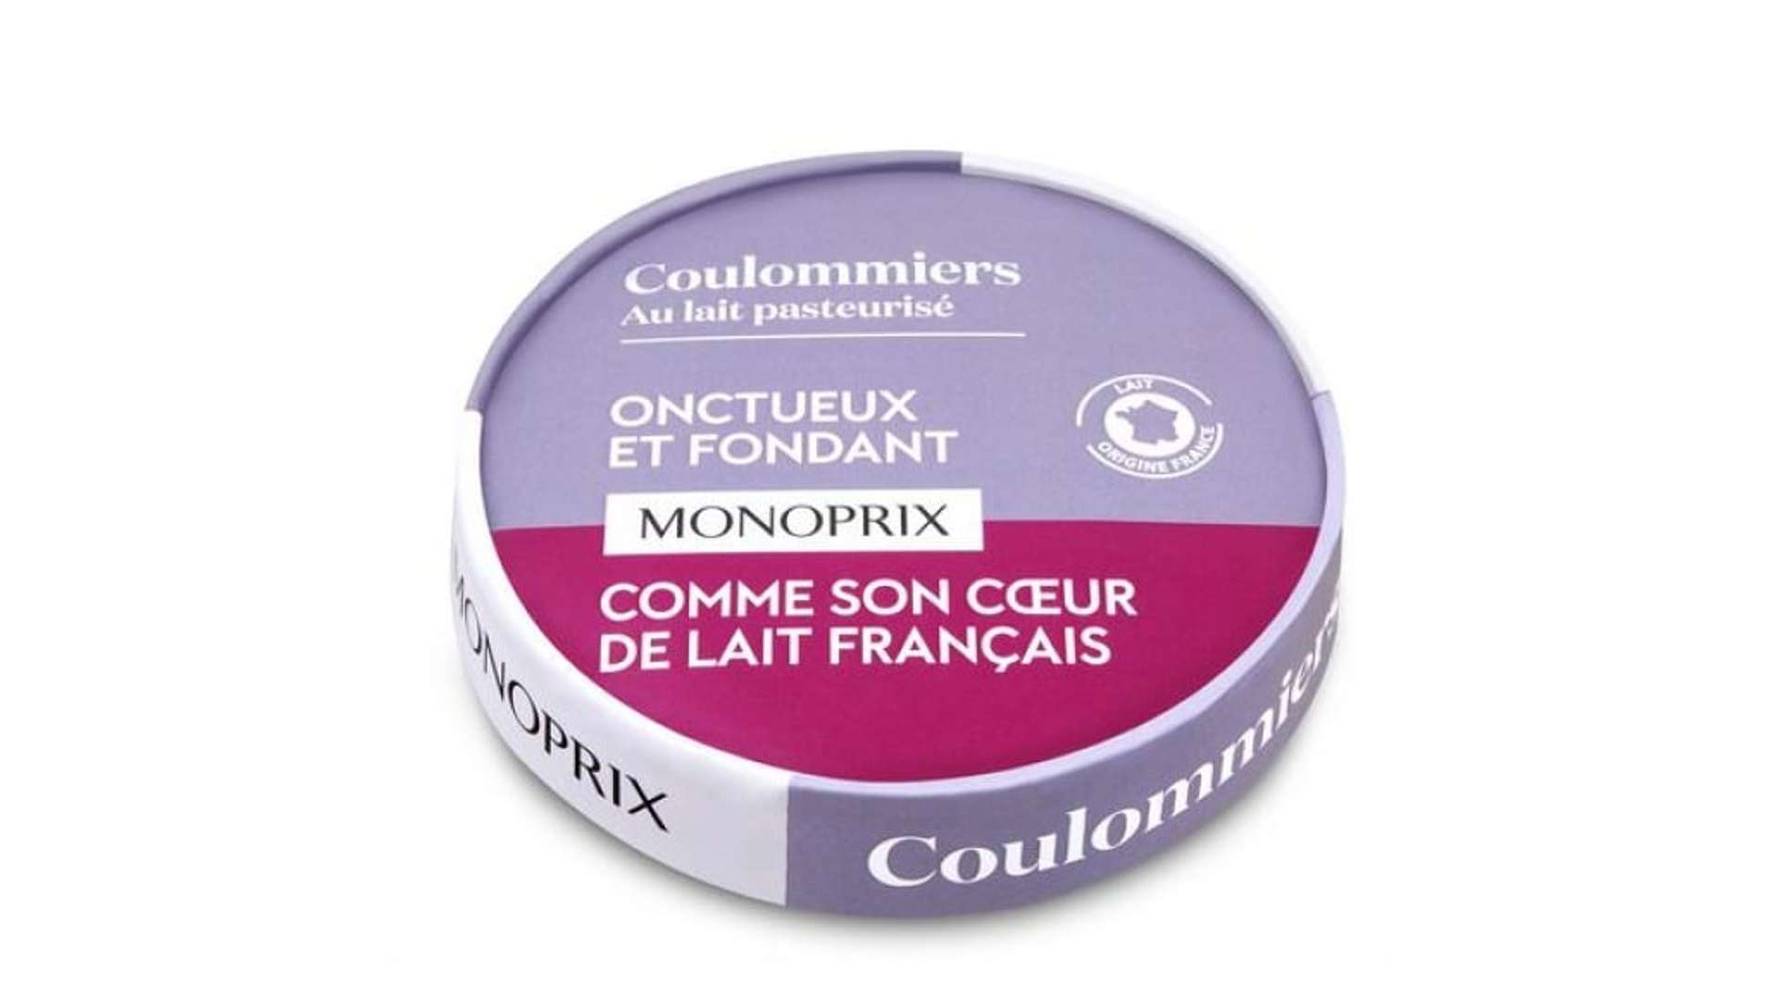 Monoprix Coulommiers Le fromage de 350g